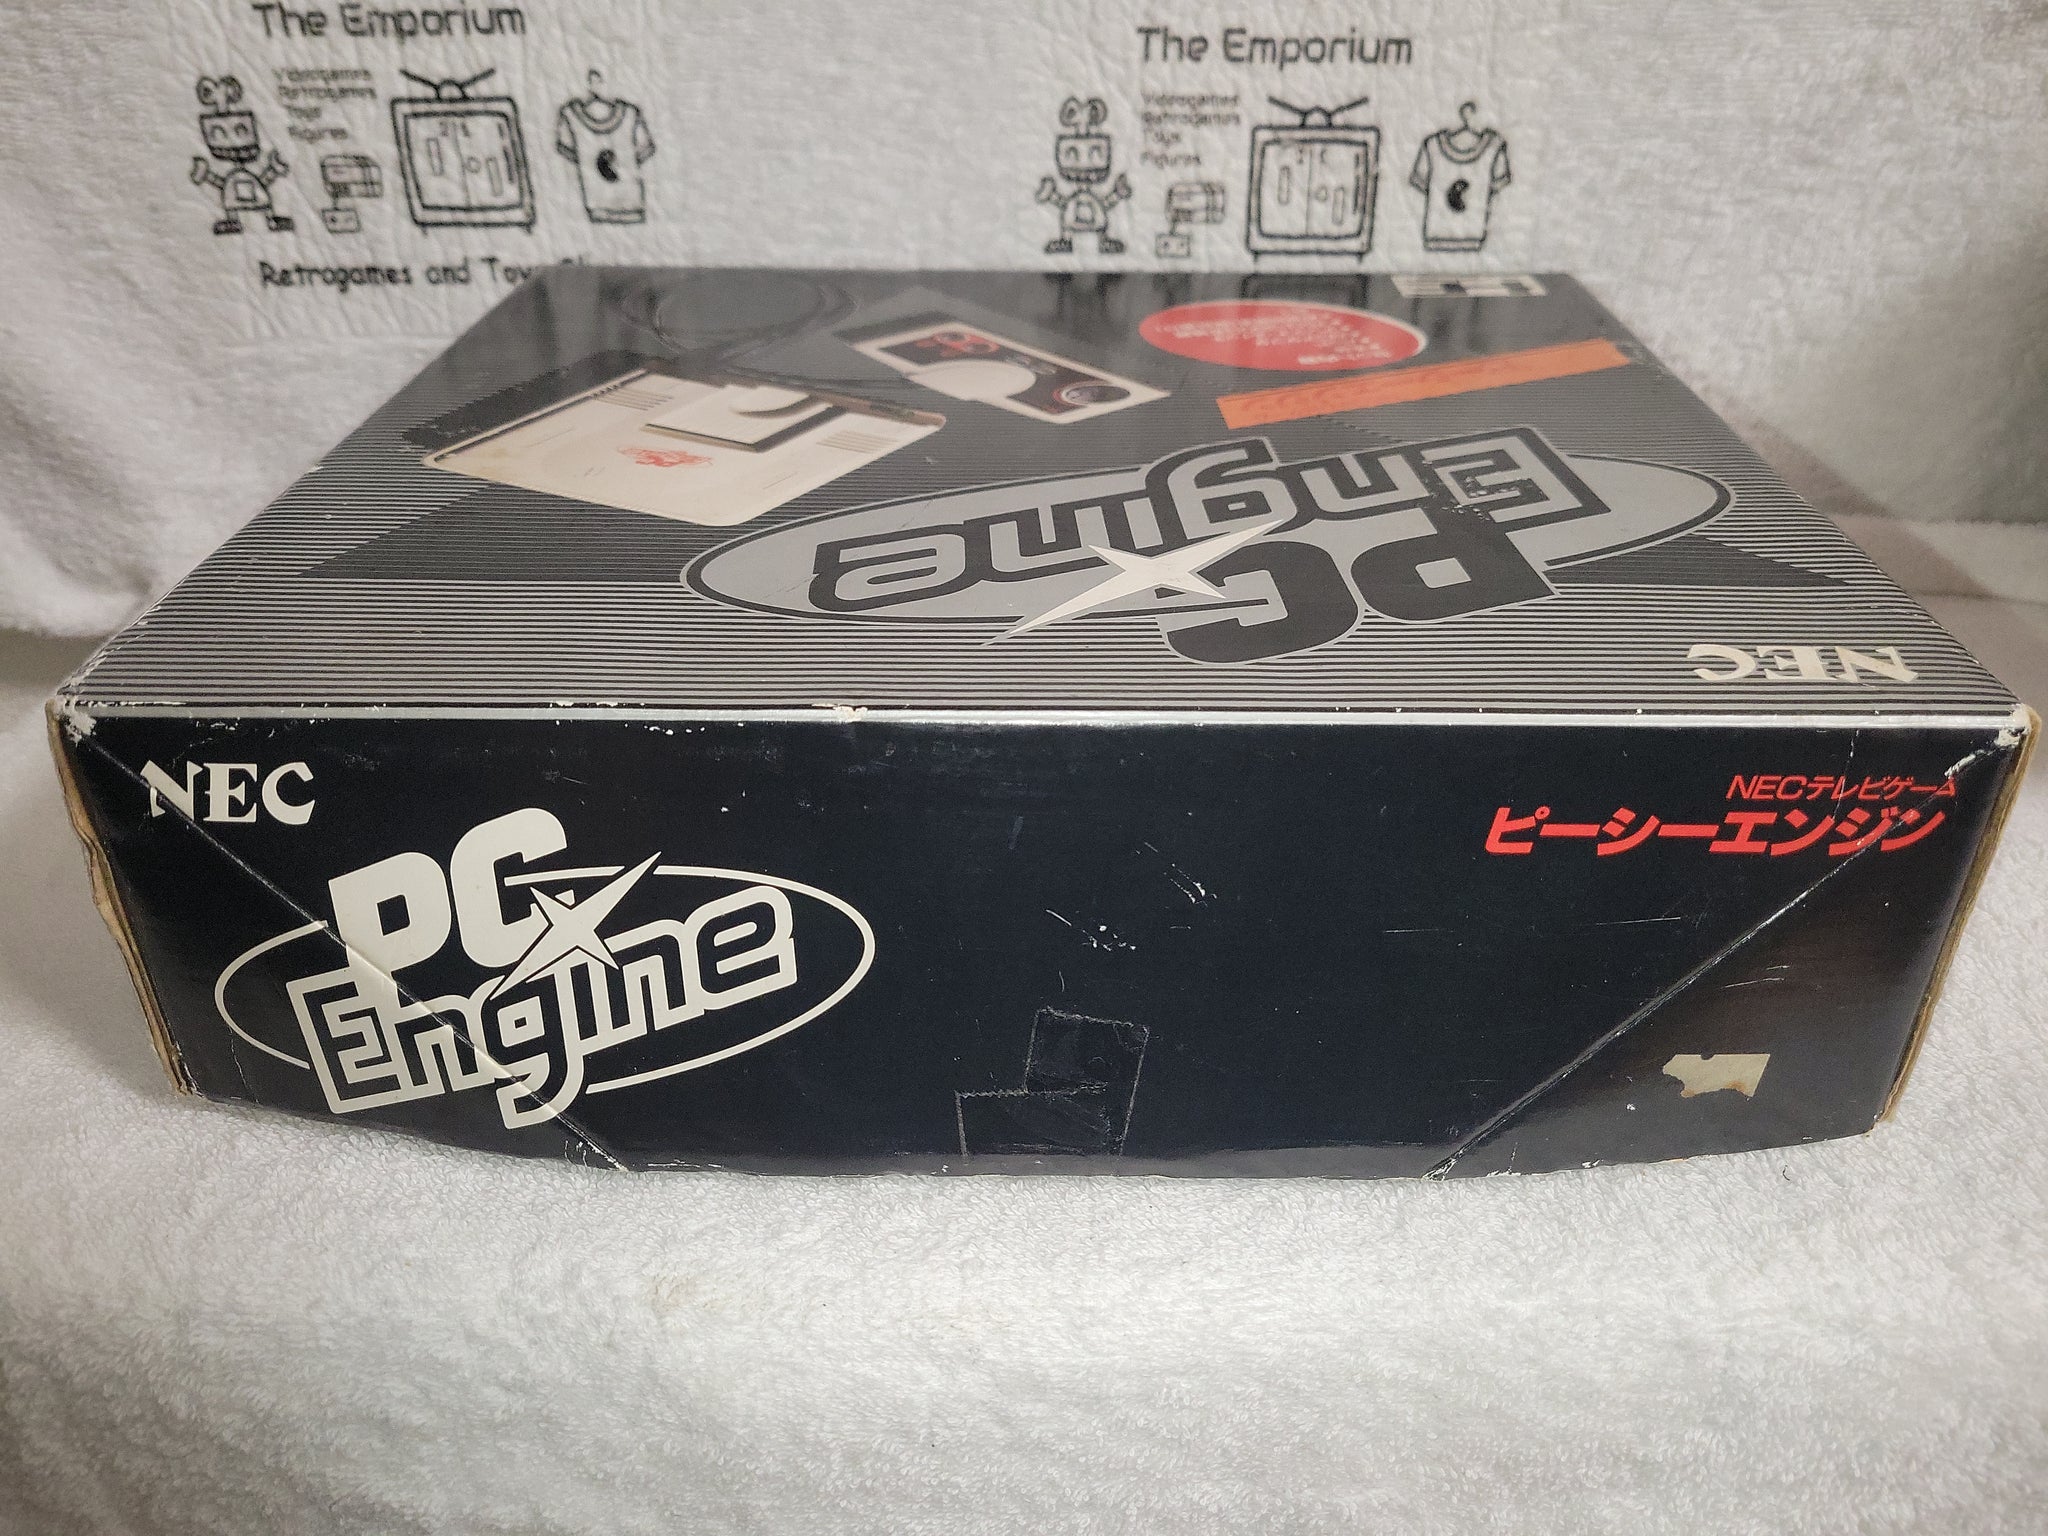 Pc Engine Console - Nec Pce PcEngine – The Emporium RetroGames and